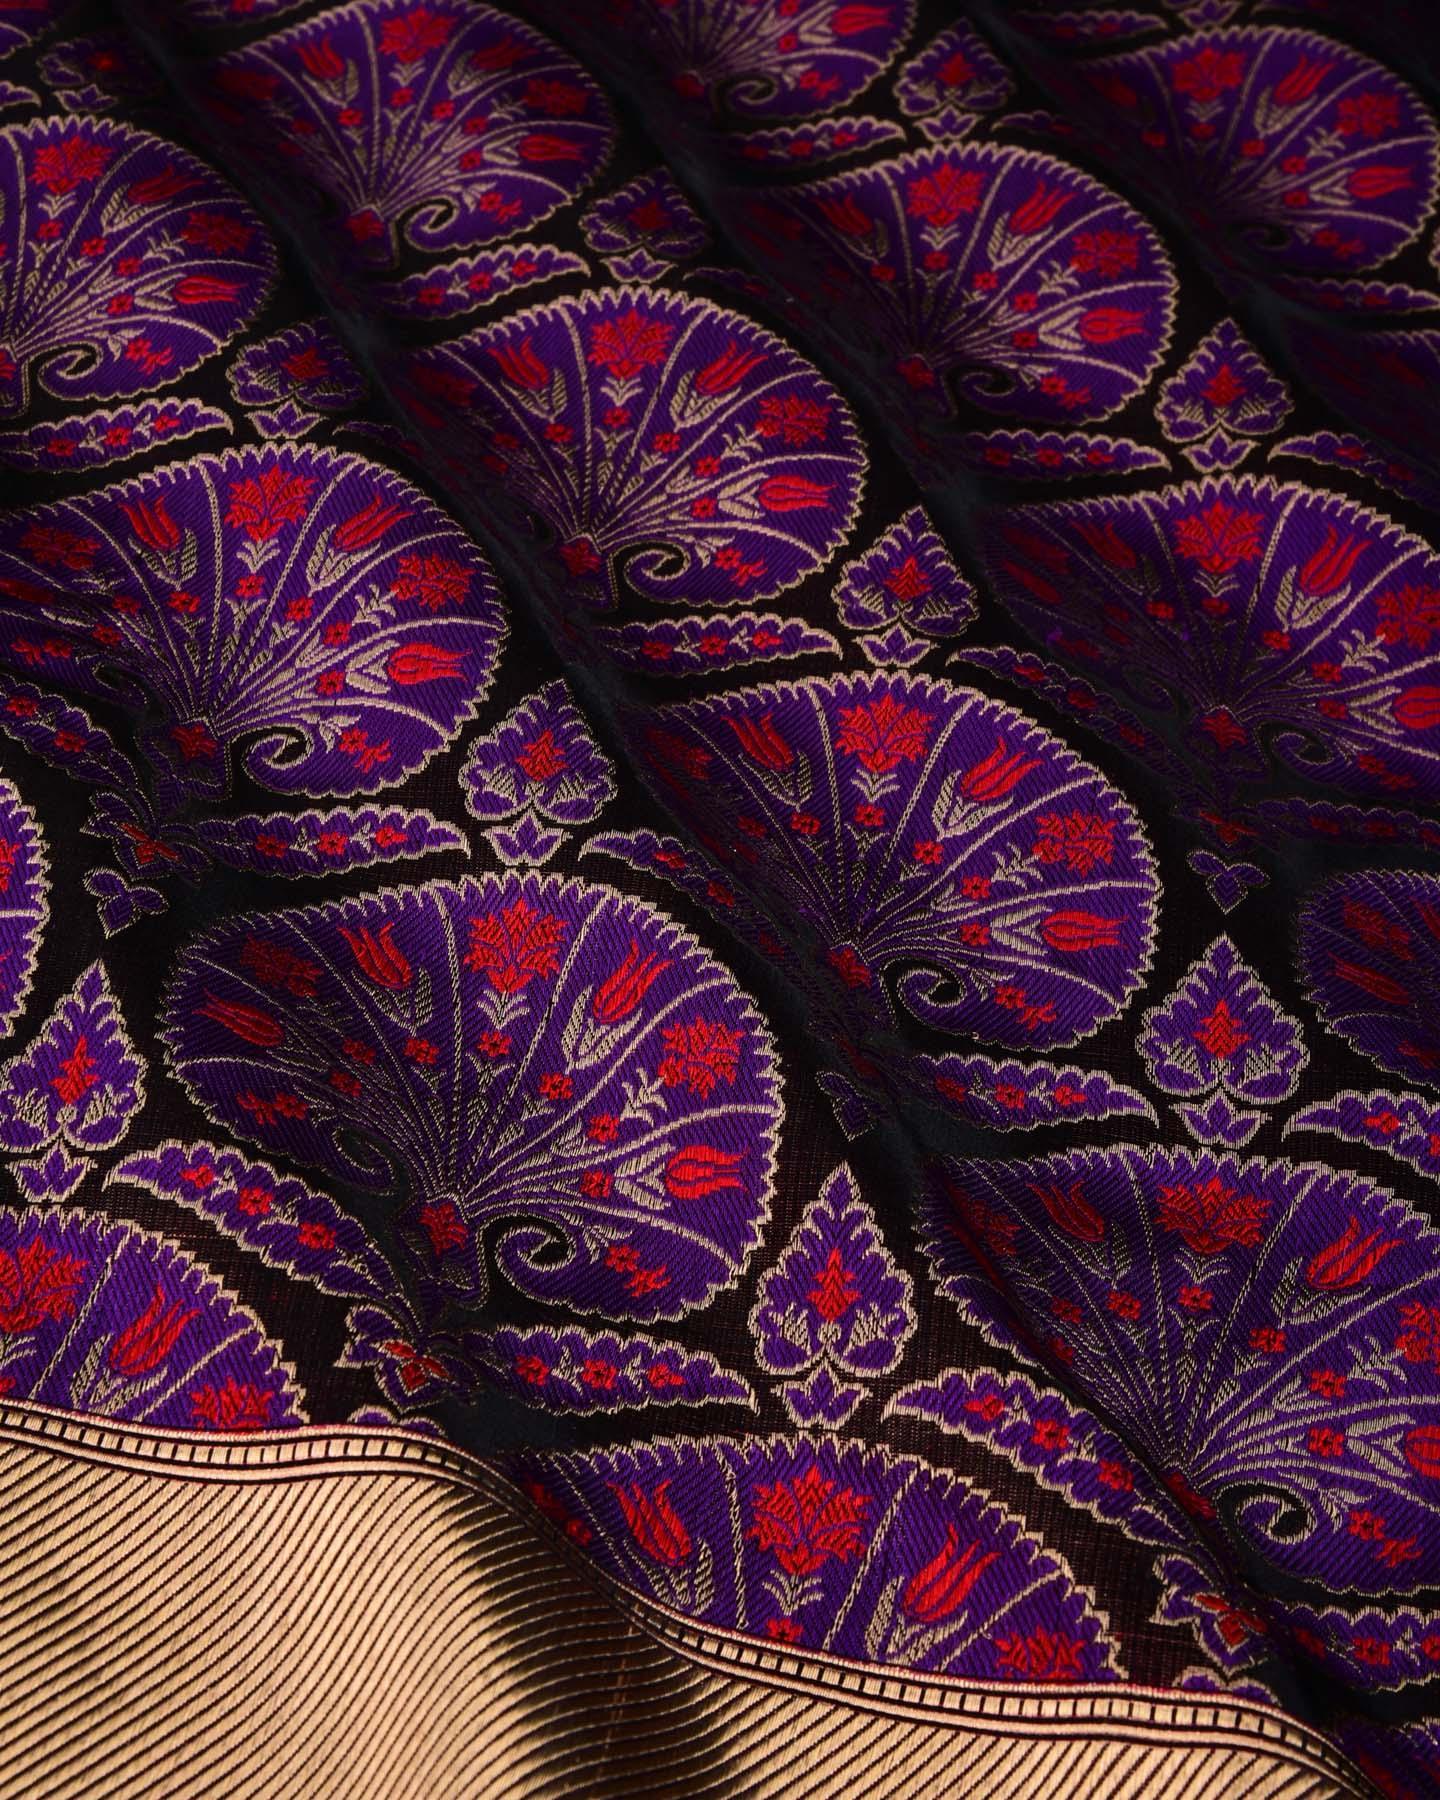 Purple Banarasi Traditional Boota Satin Jamawar Brocade Handwoven Katan Silk Saree with Zari Accents - By HolyWeaves, Benares